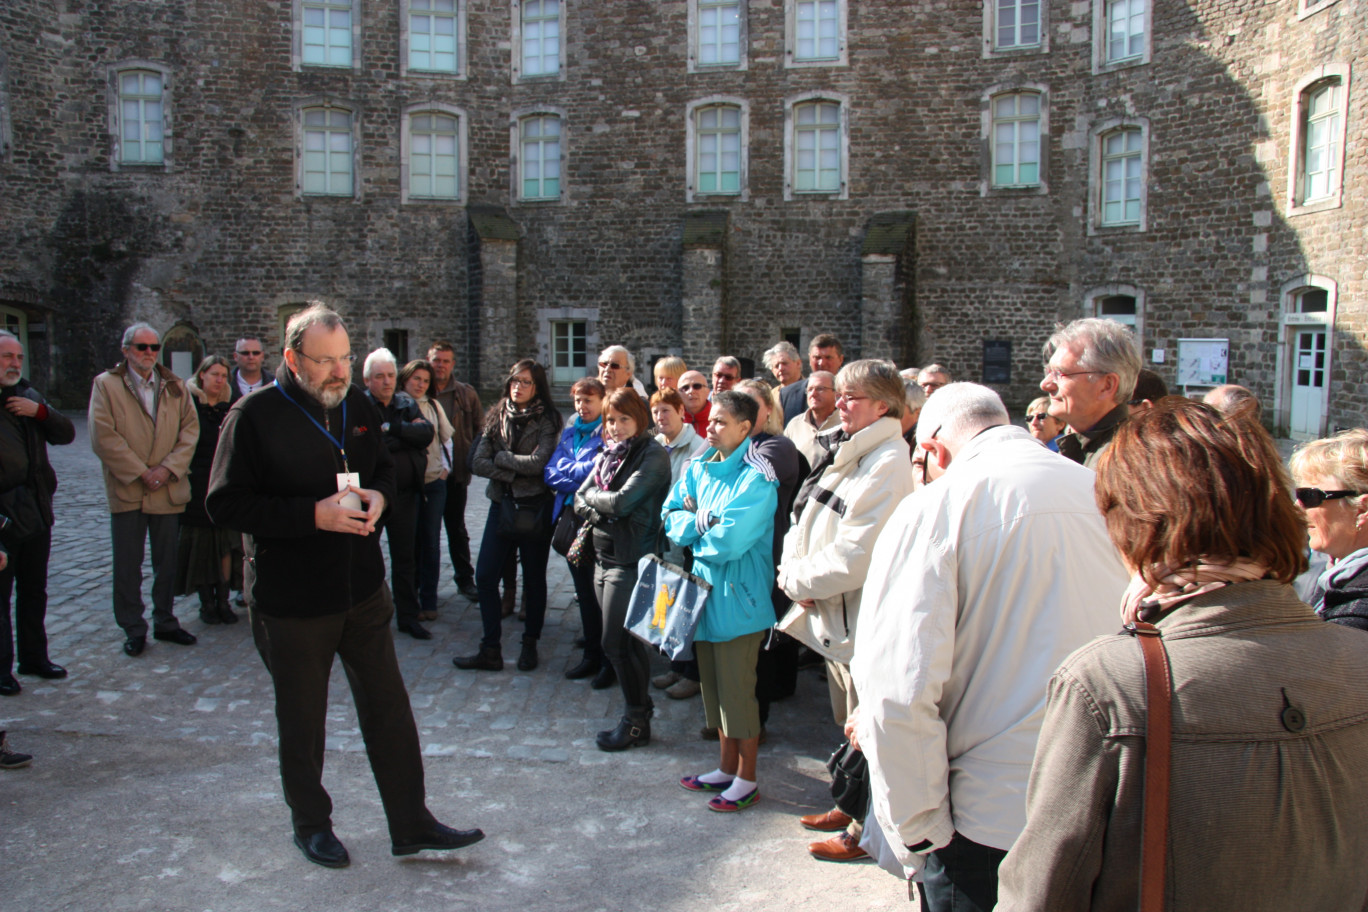 Les participants à l'éductour écoutent attentivement les explications de leur guide dans la cour du château-musée de Boulogne-sur-Mer.